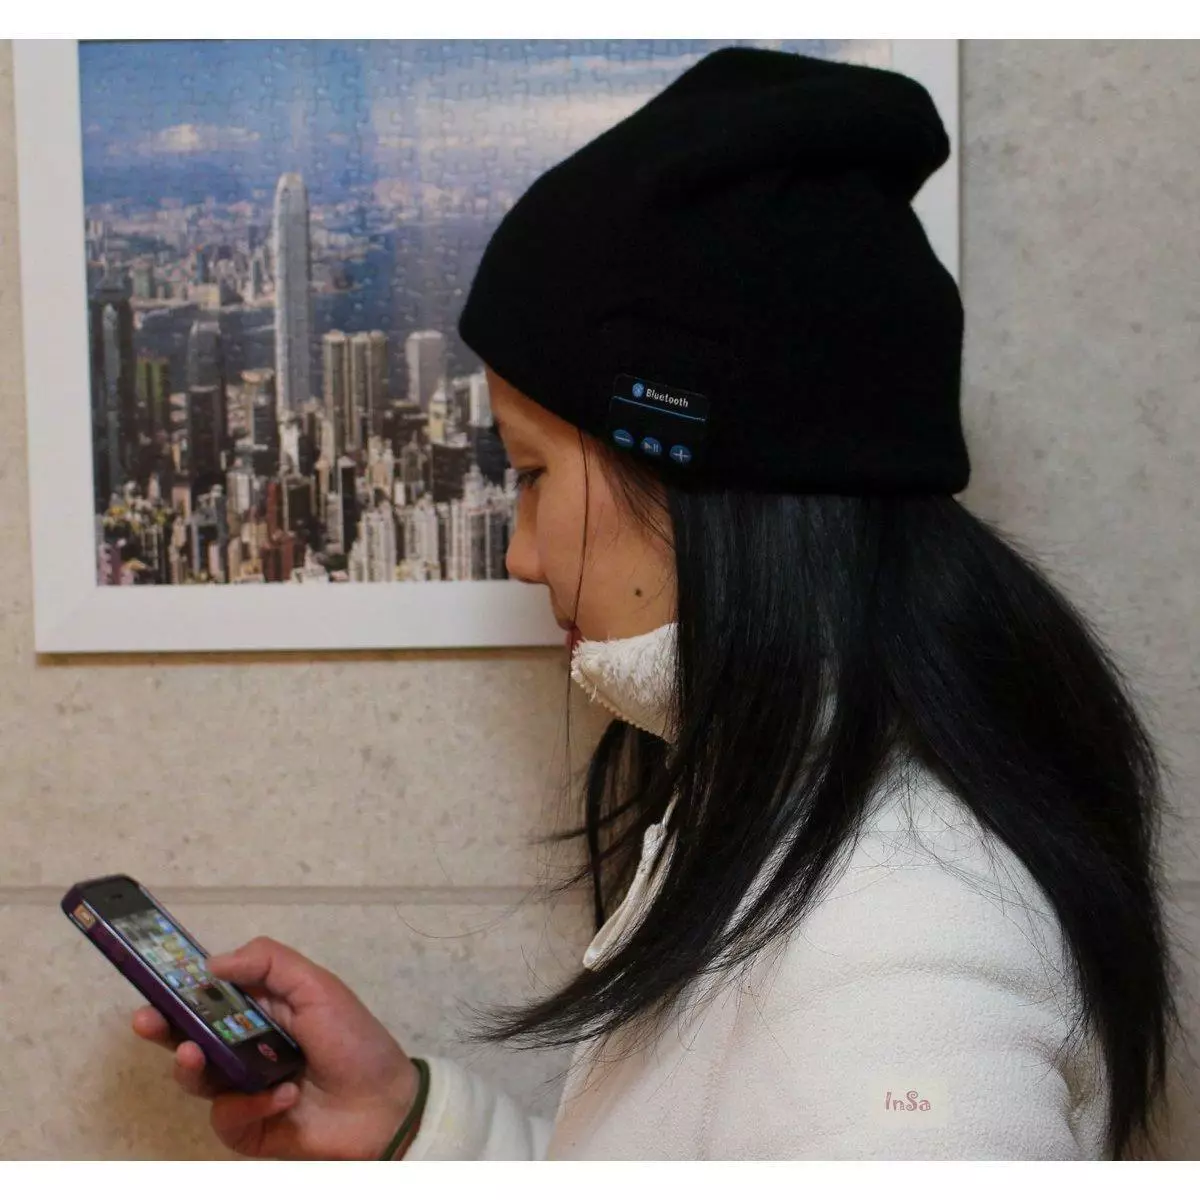 I-headsenes hat (iifoto ezingama-52): Iimodeli ezinee-headtooth ze-Bluetooth kunye neentloko 2945_18